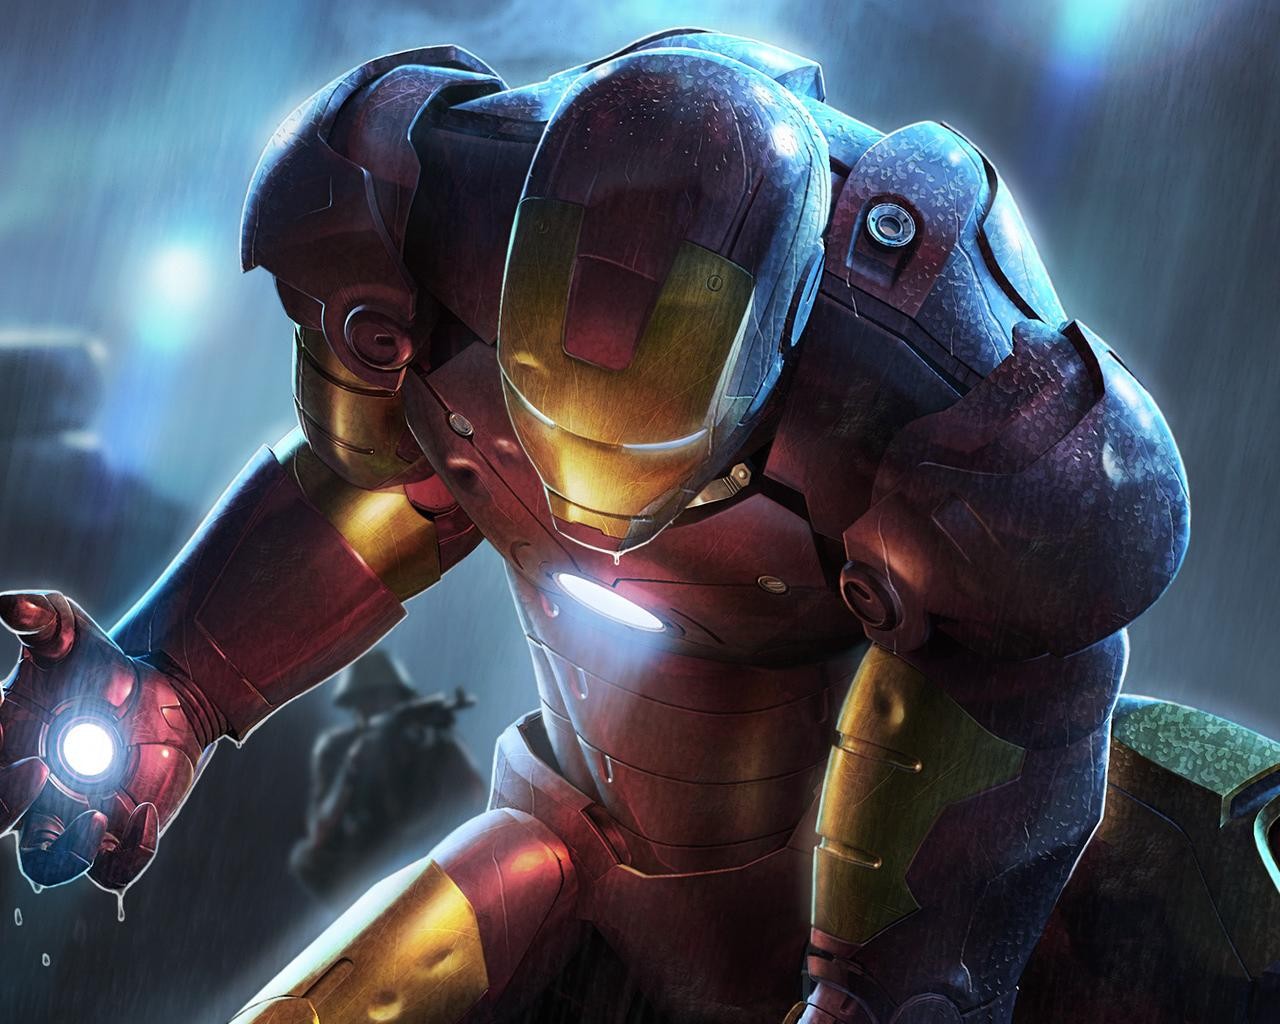 Hình nền Iron Man là một lựa chọn hoàn hảo cho những ai yêu thích siêu anh hùng. Với các hình ảnh Iron Man chất lượng cao có độ sắc nét, chi tiết và màu sắc bắt mắt, bạn sẽ cảm thấy như mình là một phần của trận chiến đấu tranh giành công lý giữa siêu anh hùng và ác nhân.